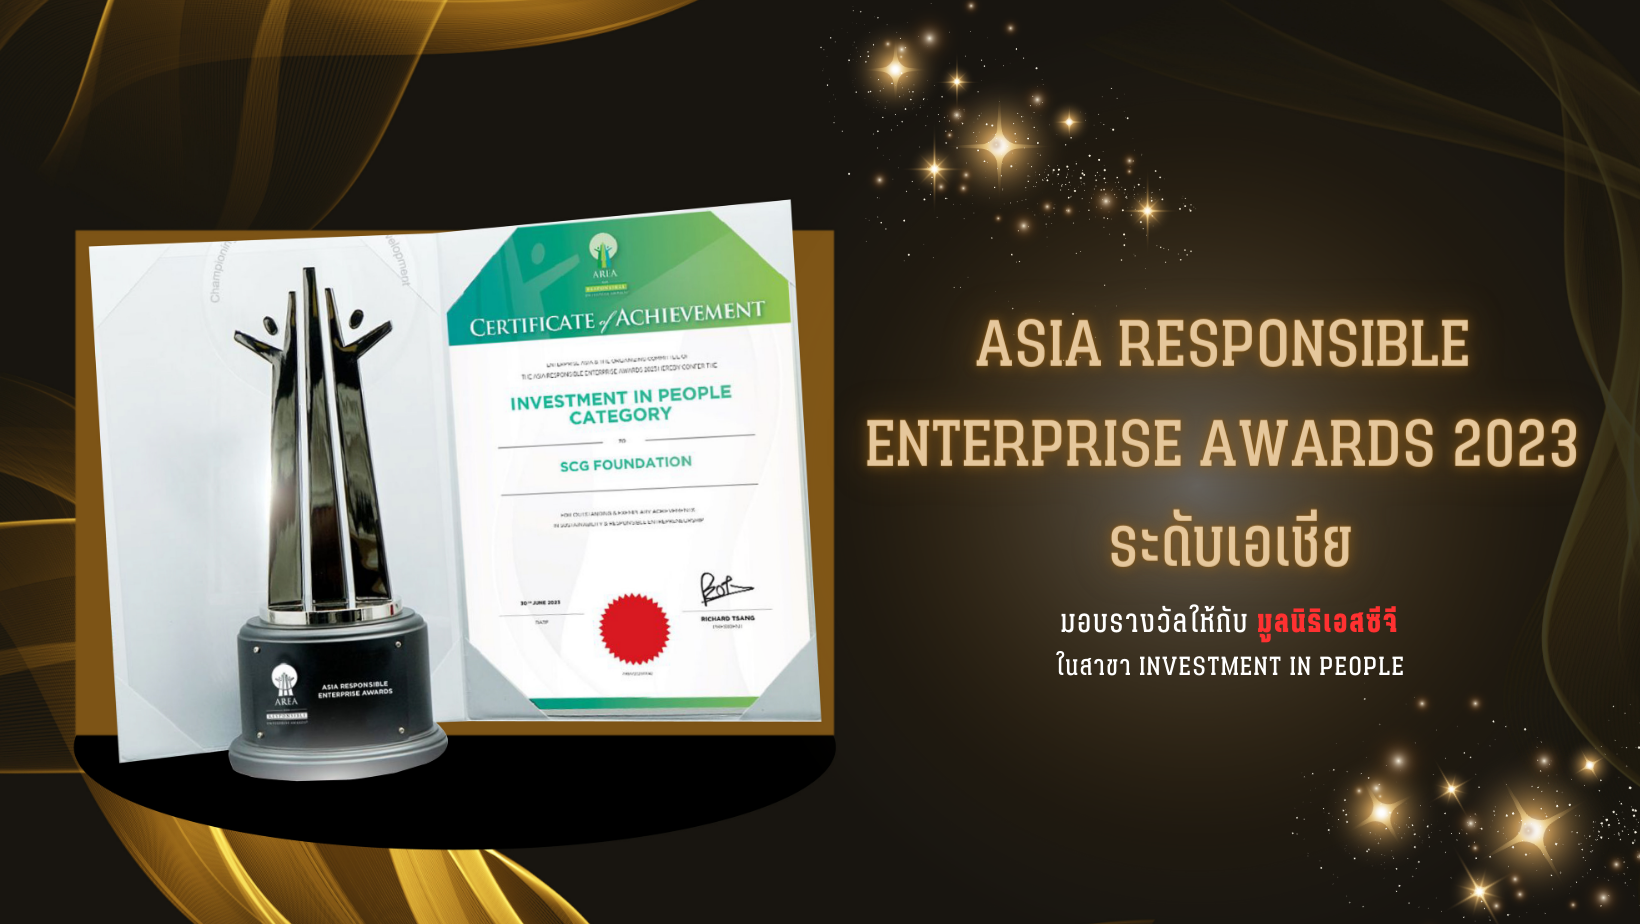 รางวัล Asia Responsible Enterprise Awards 2023 ระดับเอเชีย